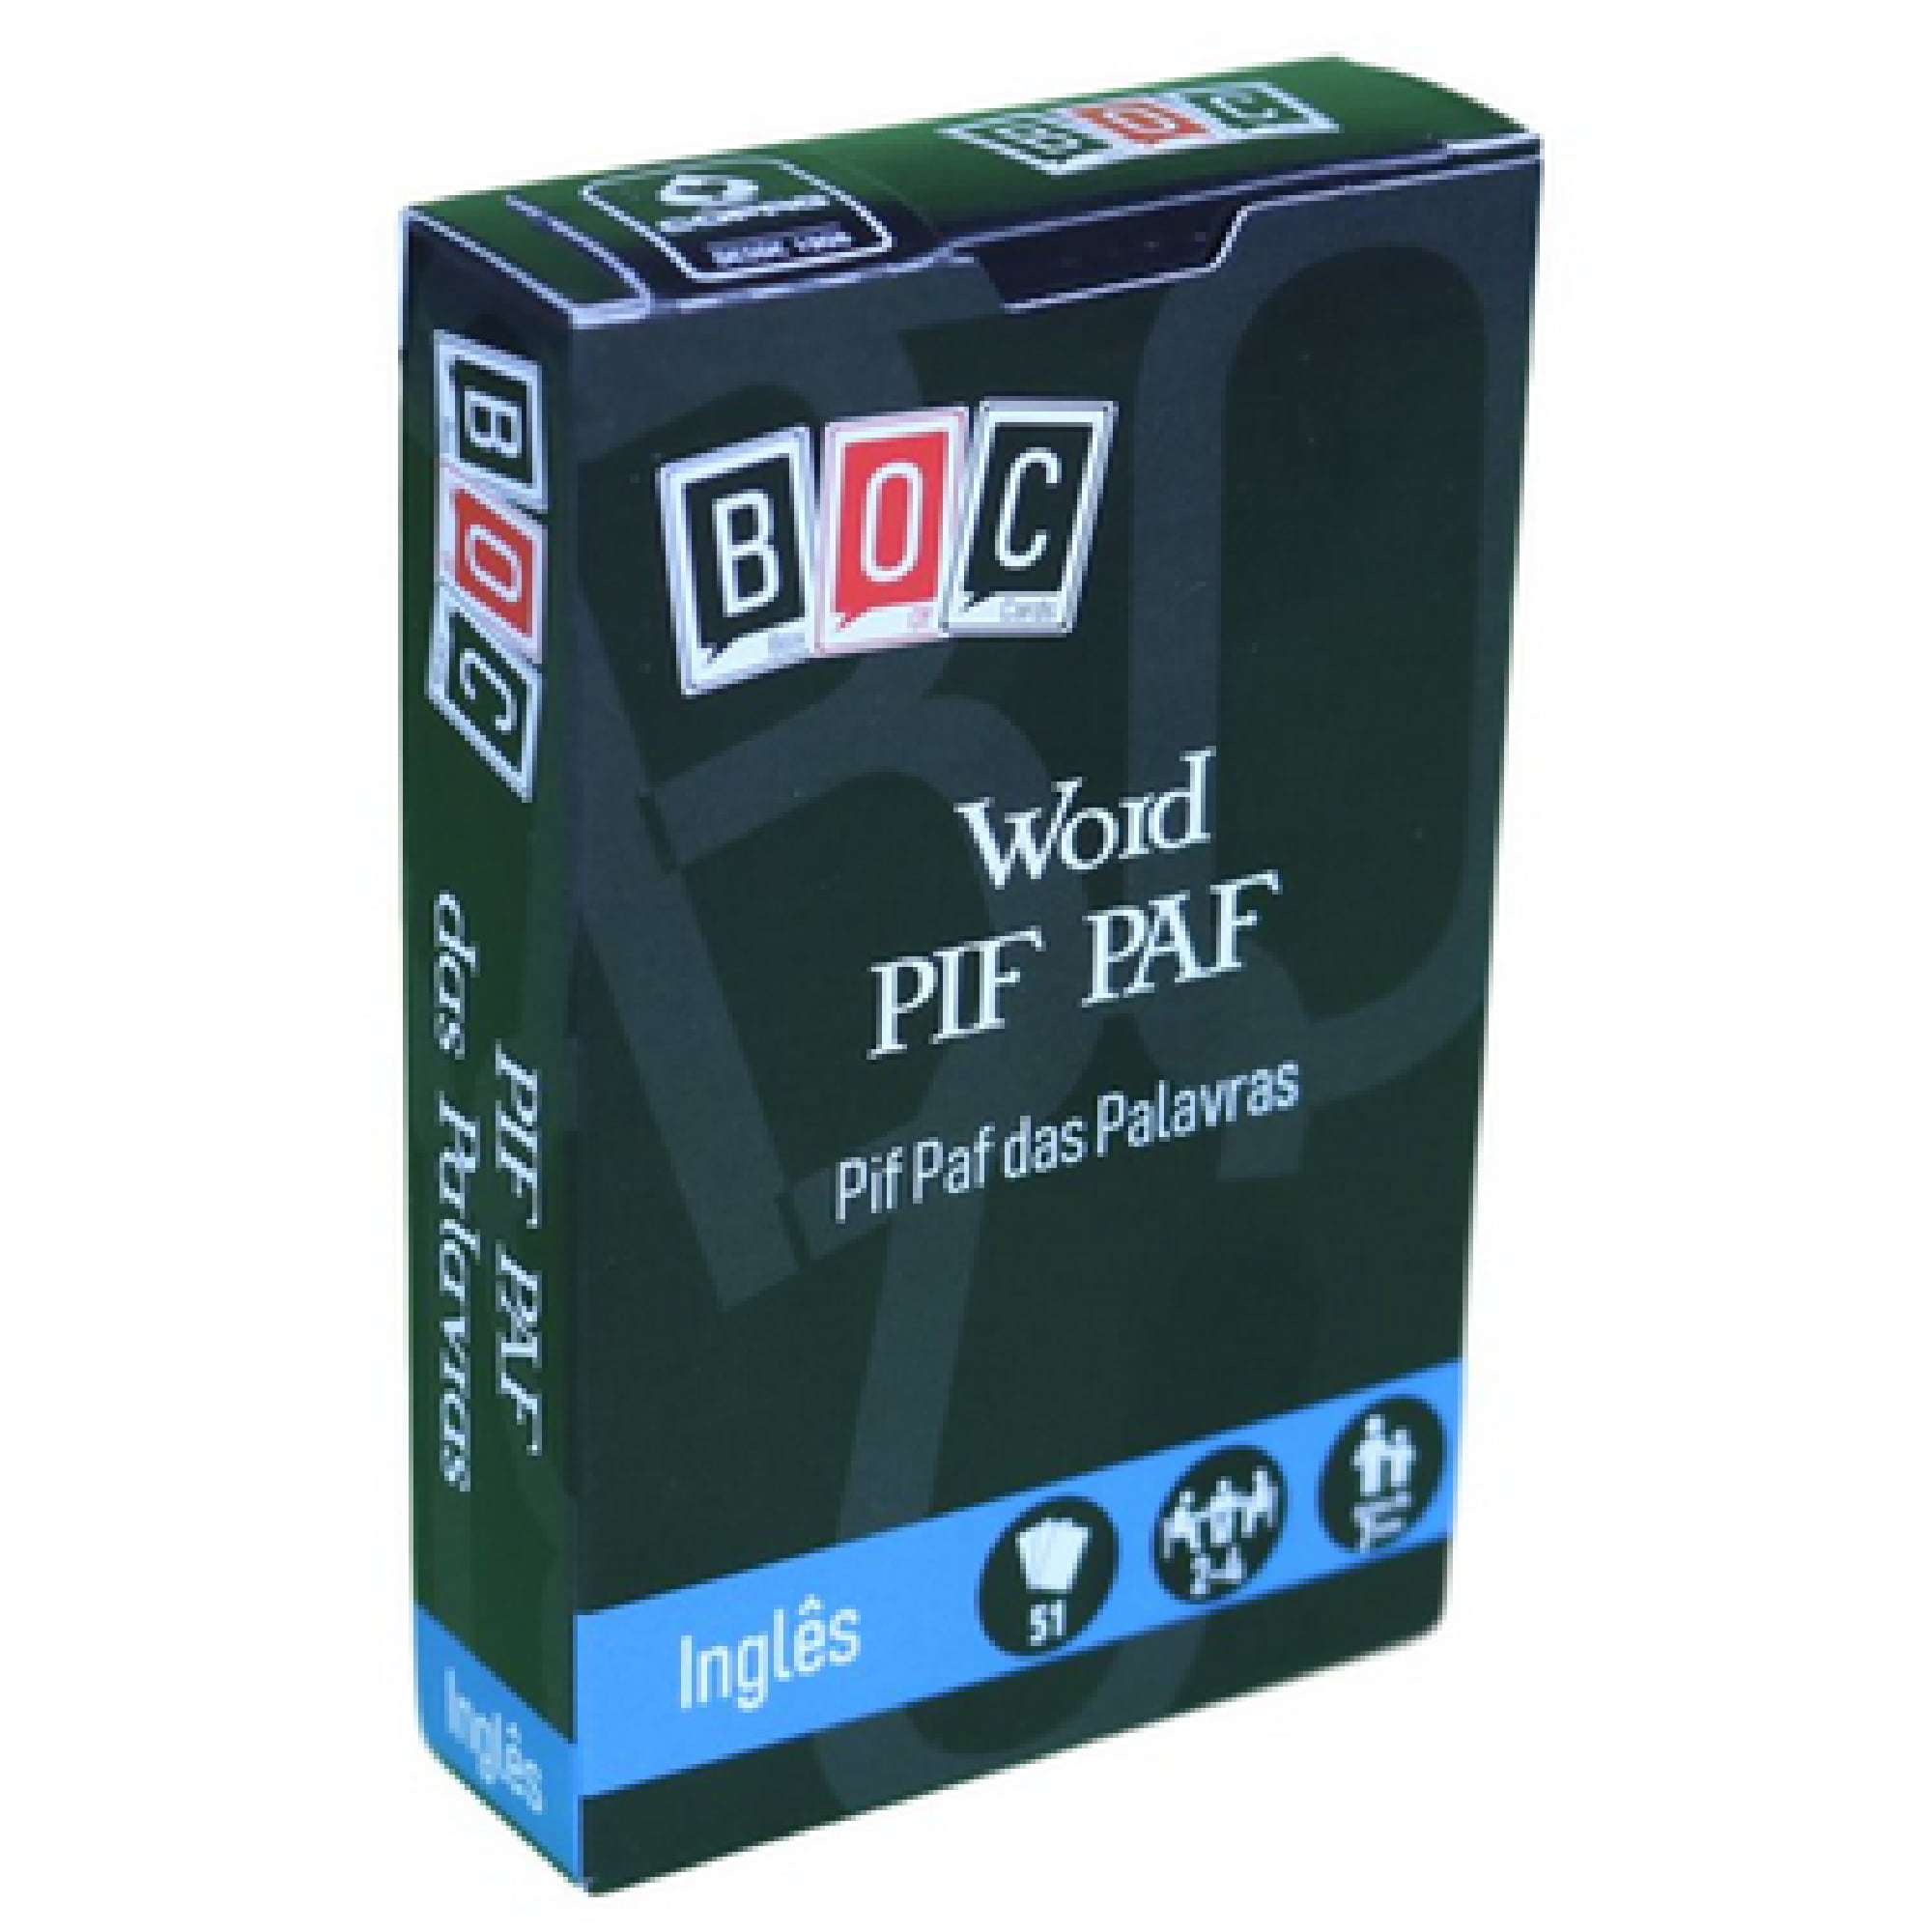 Word PIF PAF - Pif Paf das Palavras